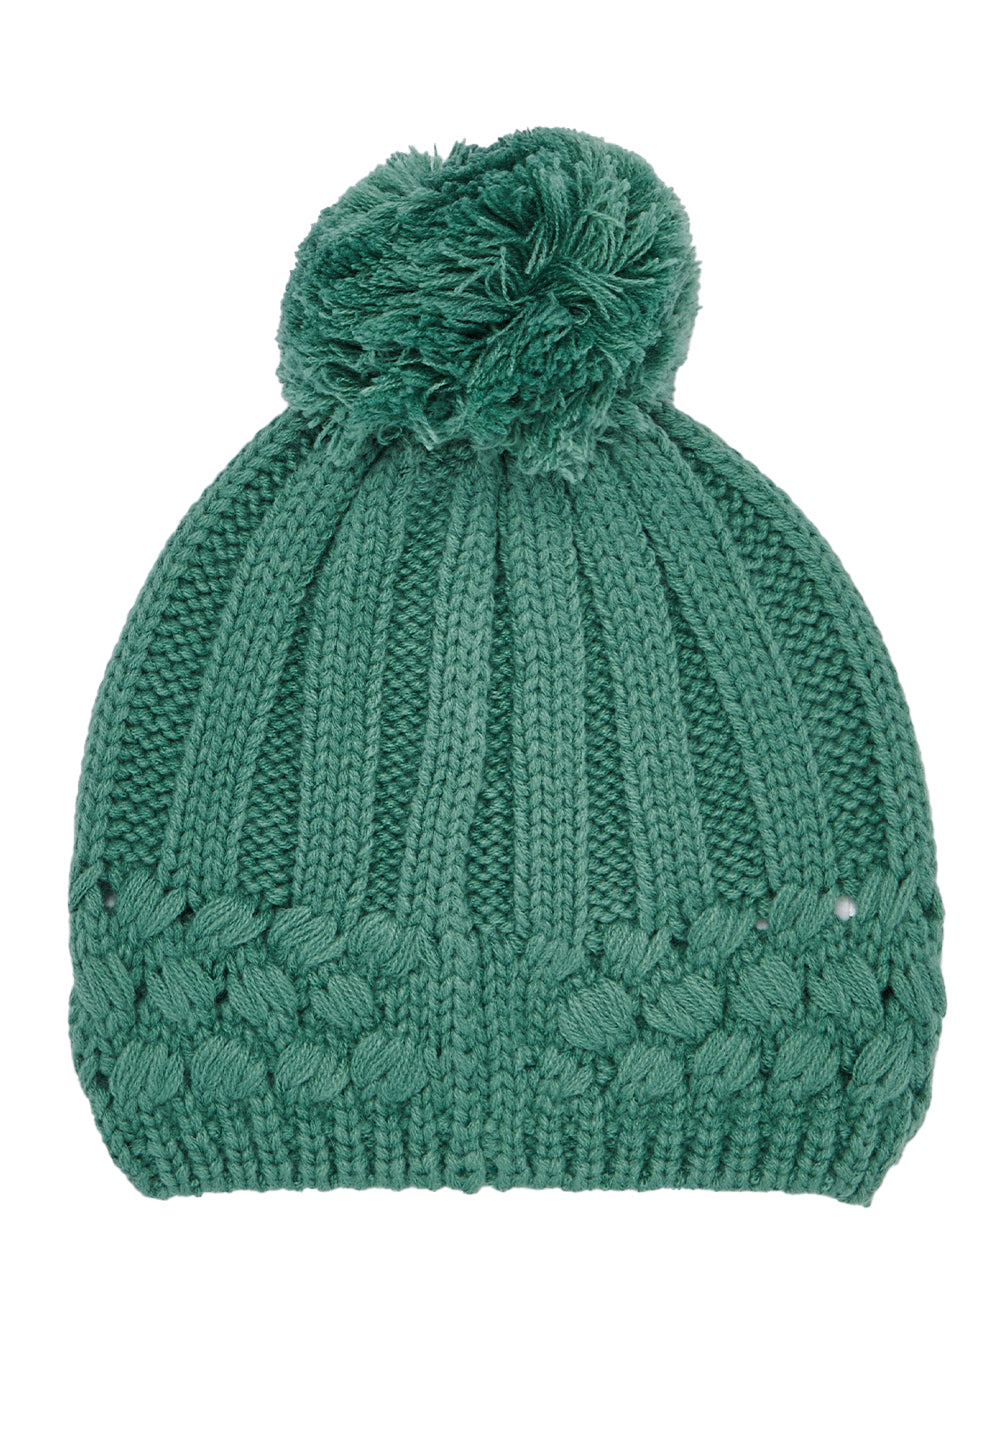 Grüner Hut für Mädchen